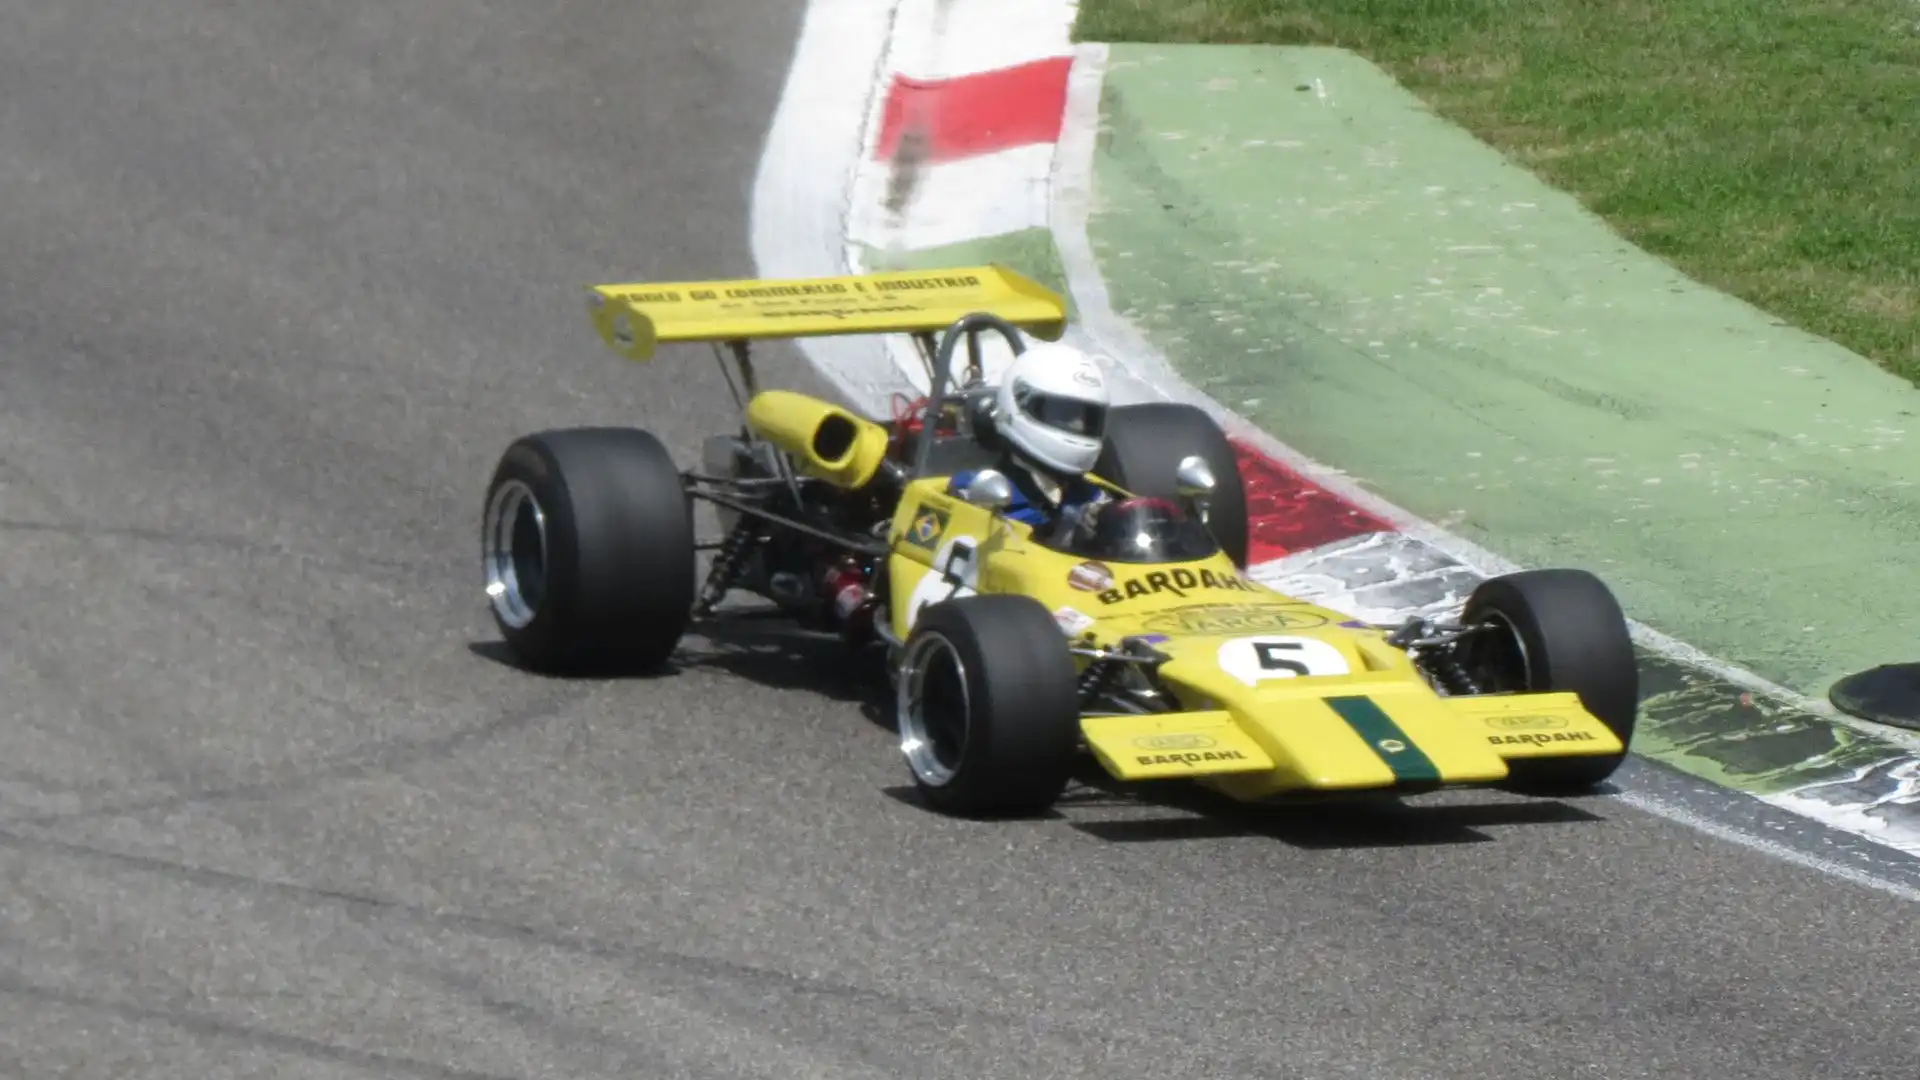 Una vettura semi-ufficiale gestita da Bernie Ecclestone gareggiò con Jochen Rindt come pilota